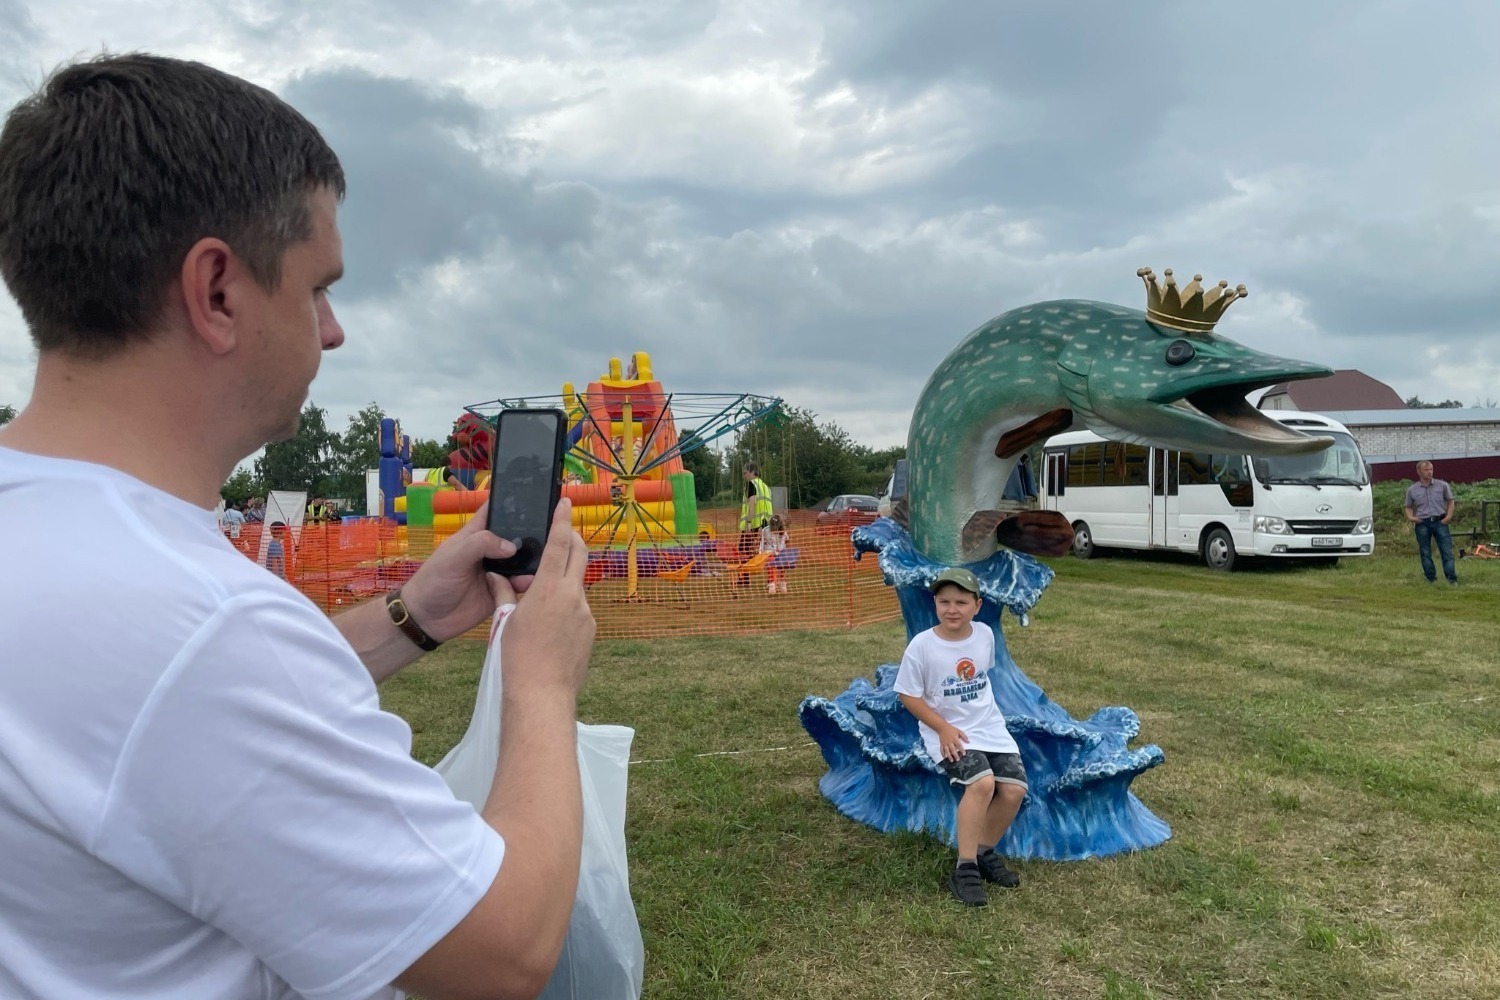 С фигурой щуки на фестивале в Староюрьево посетители охотно фотографируются